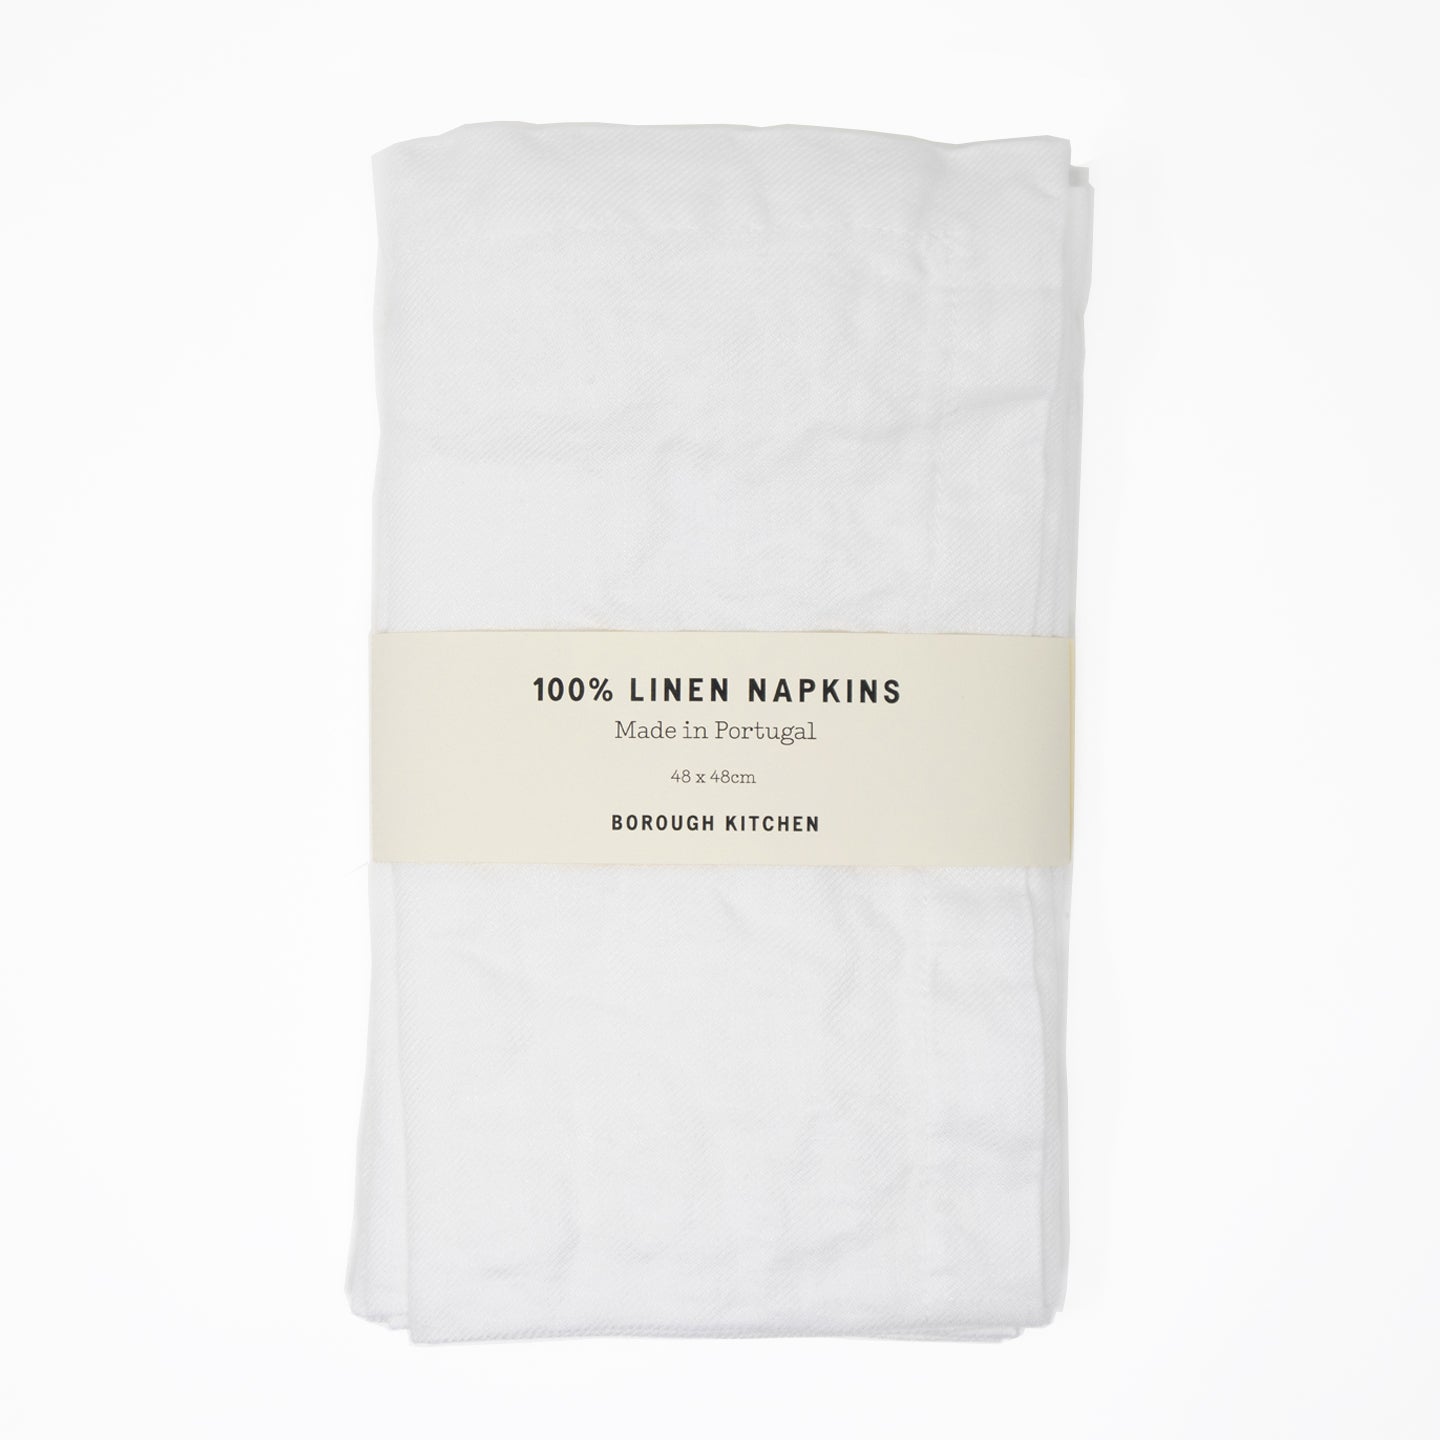 Borough Kitchen Linen Napkins / Set of 4 / 48x48cm / White